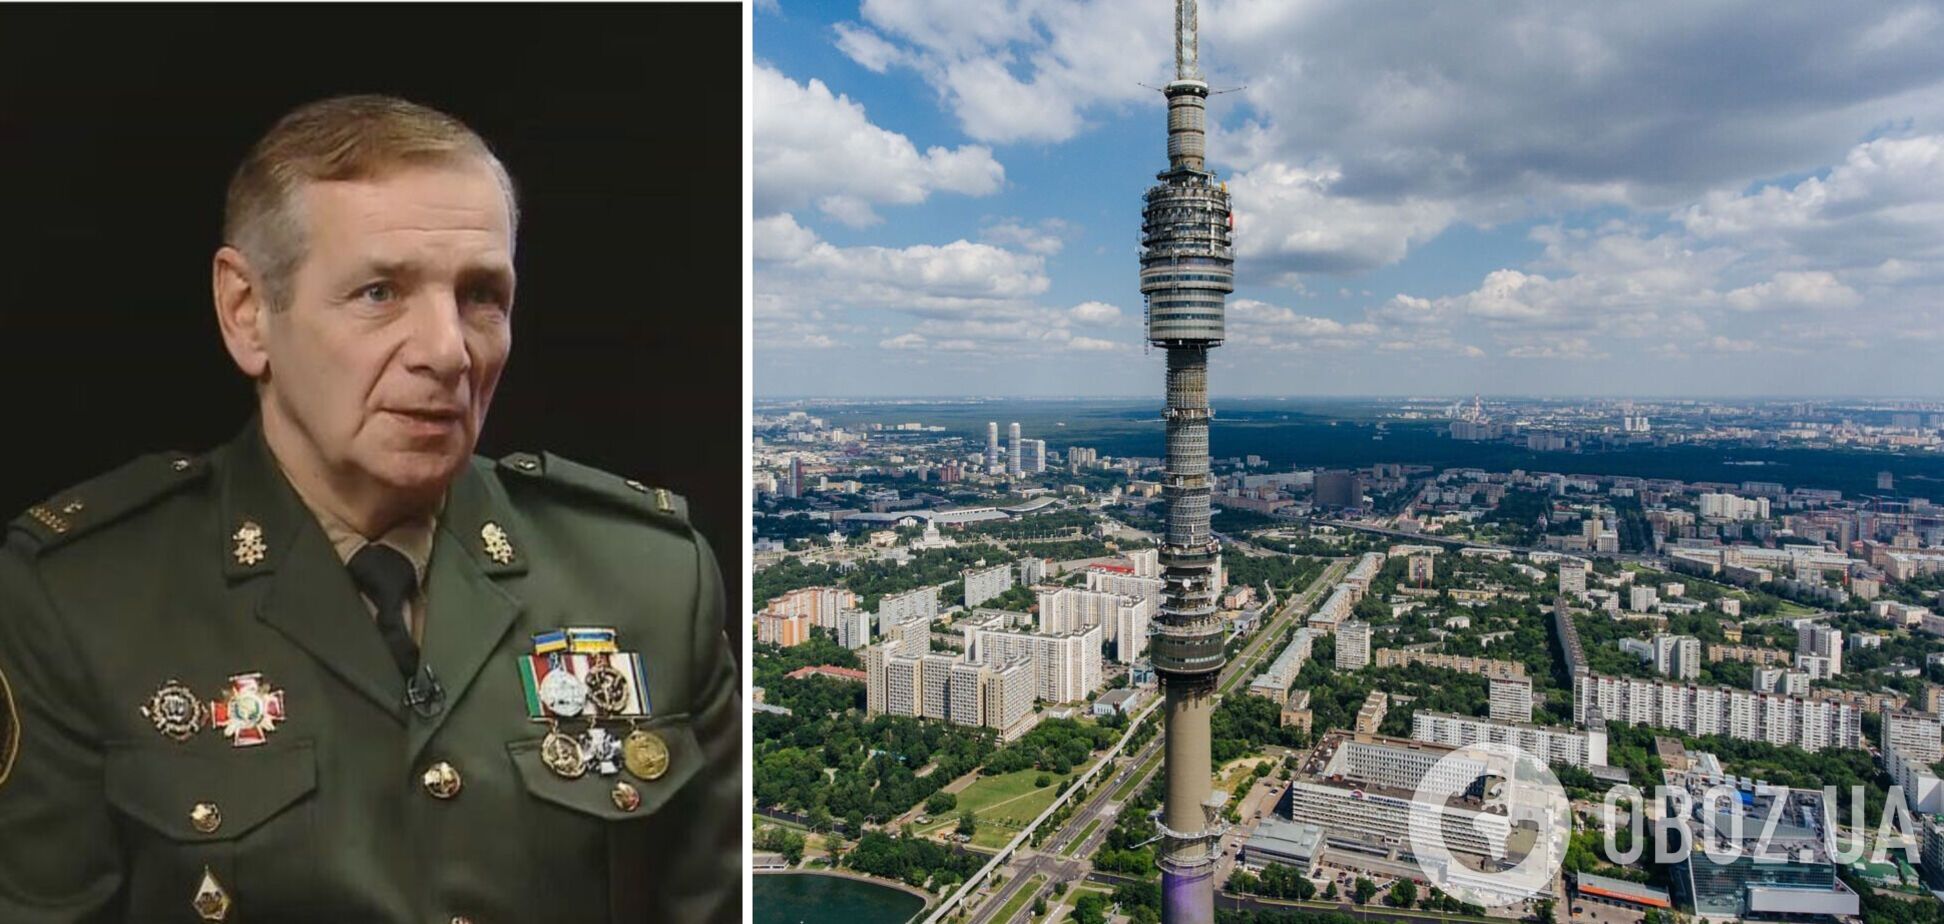 Вдарити дроном по 'Останкіно': майор Гетьман закликав знищити центр пропаганди Кремля